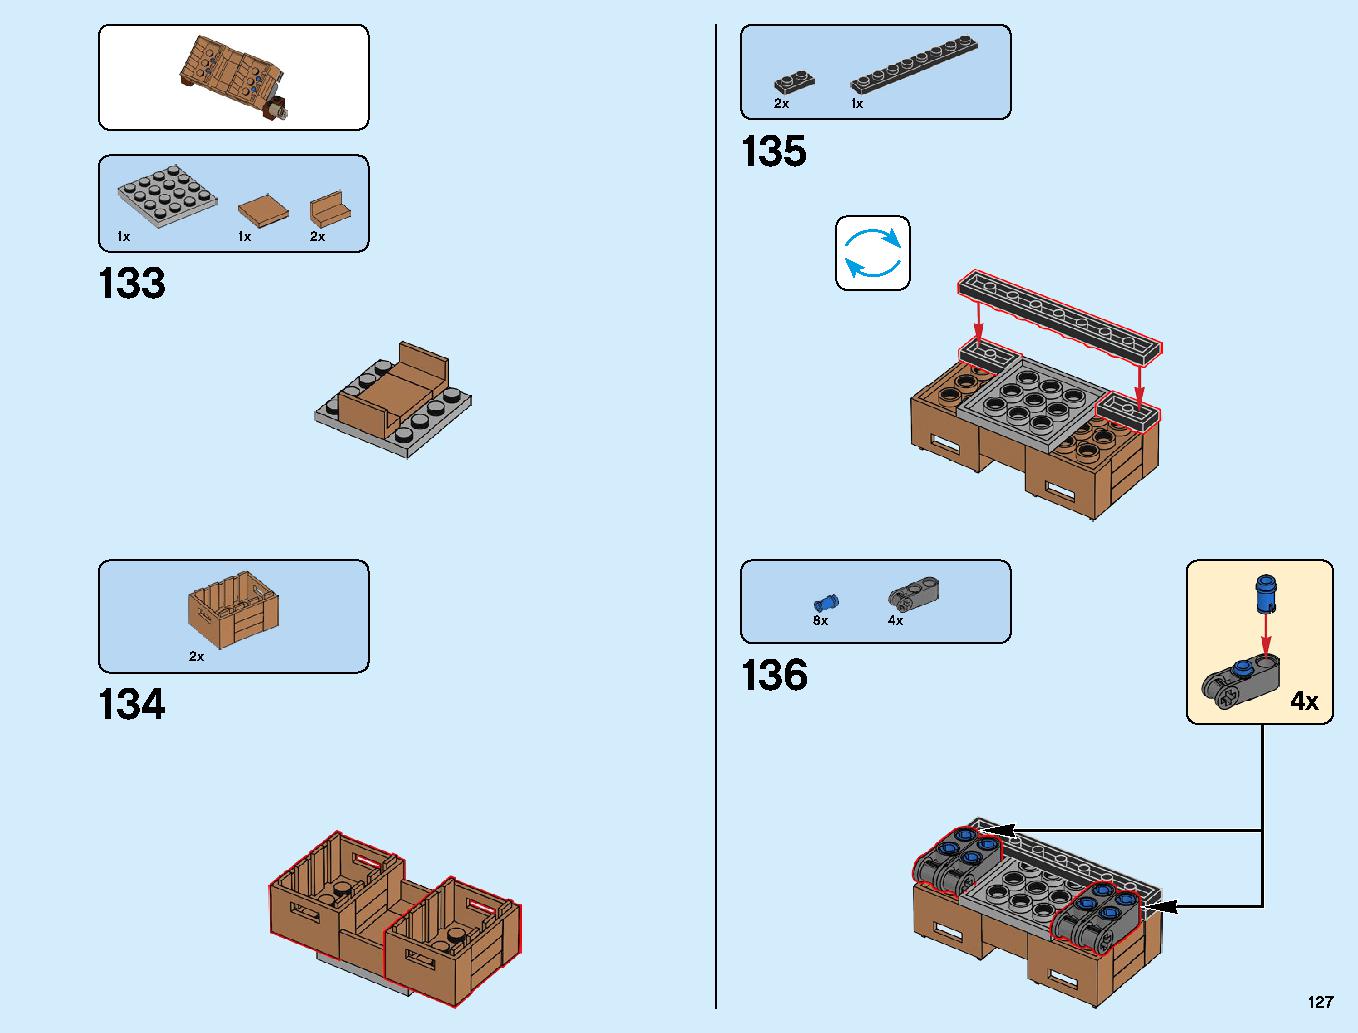 ニンジャゴーシティ・ポートパーク 70657 レゴの商品情報 レゴの説明書・組立方法 127 page